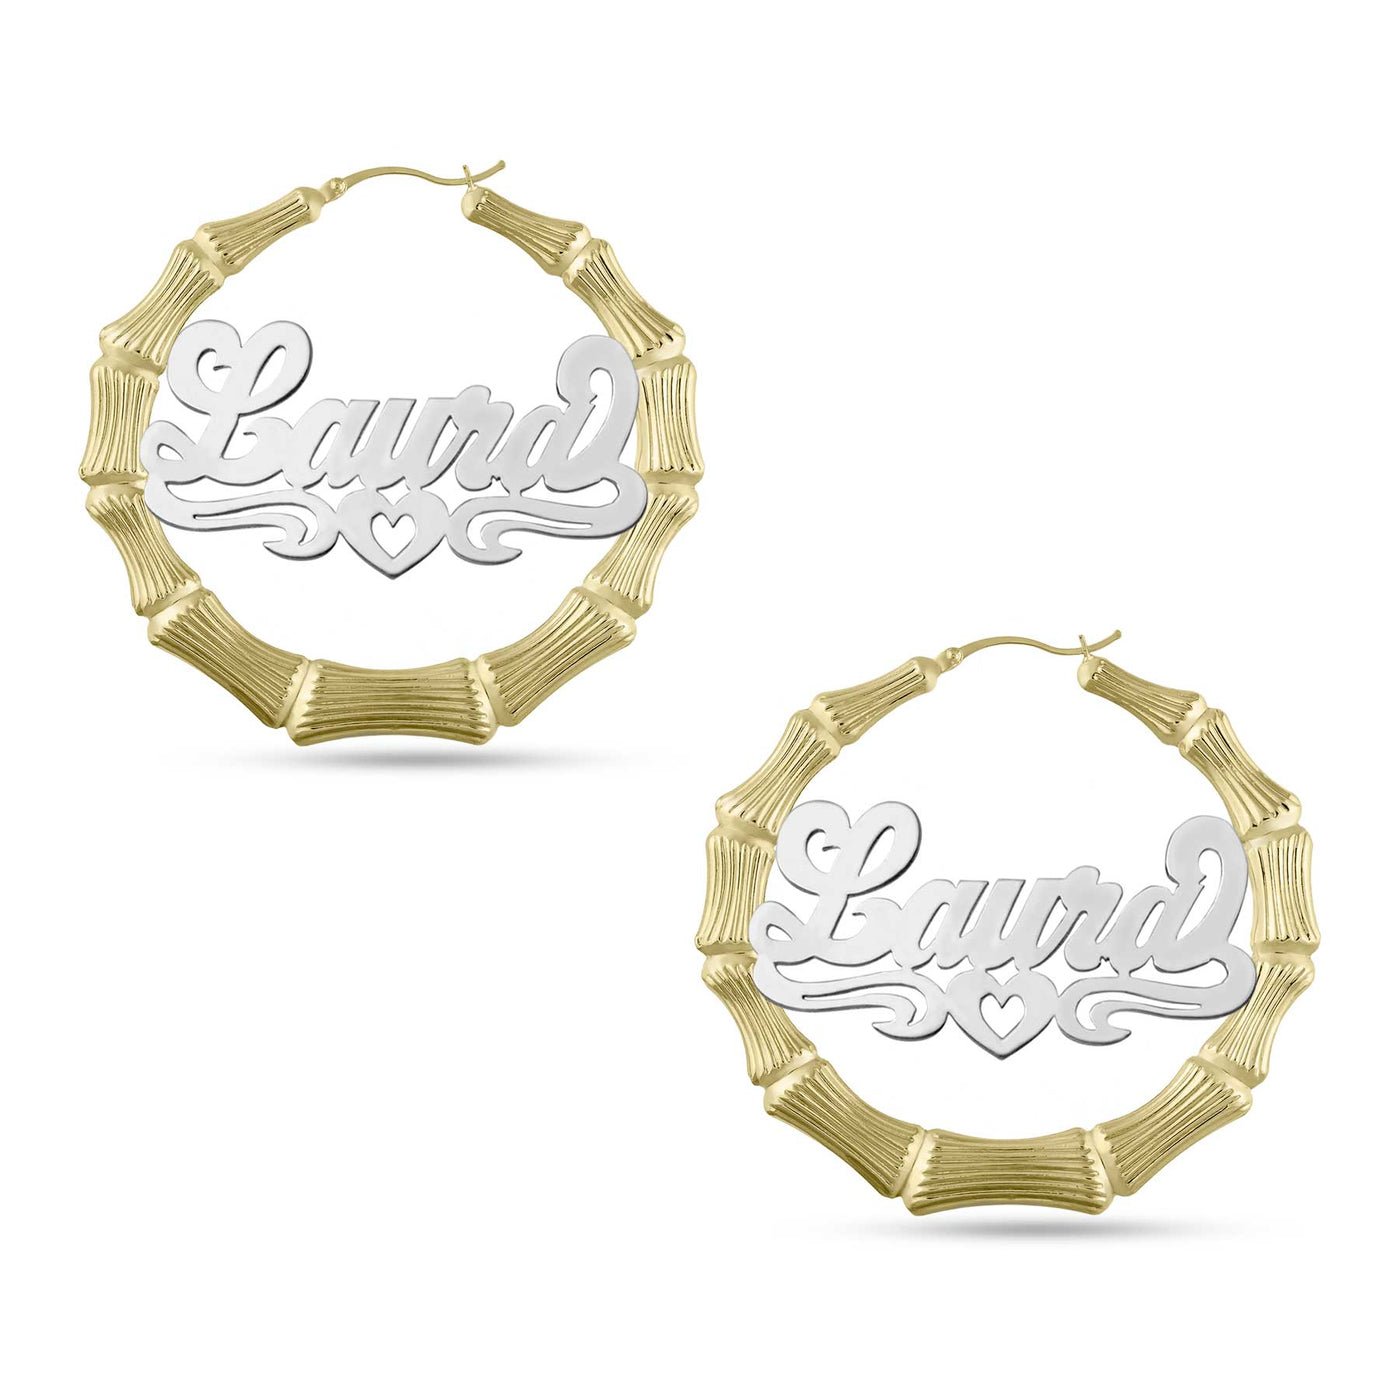 Ladies Script Name Plate Bamboo Hoop Earrings 14K Gold - Style 123